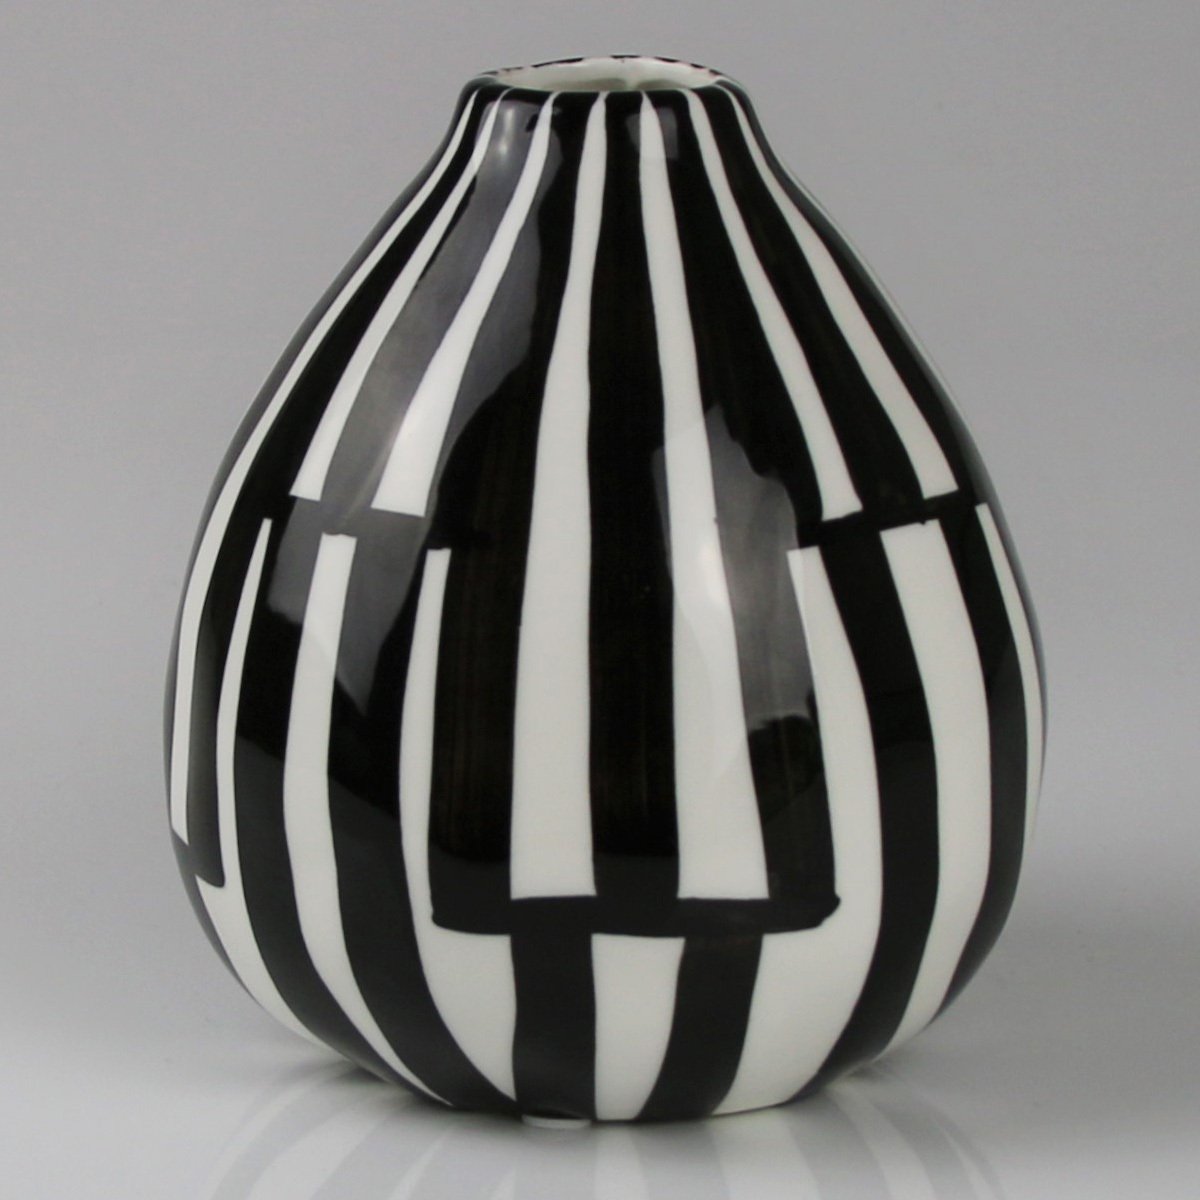 Keramikvase mit geometrischem Muster, schwarzweiß, Ø 13 x H 15 cm